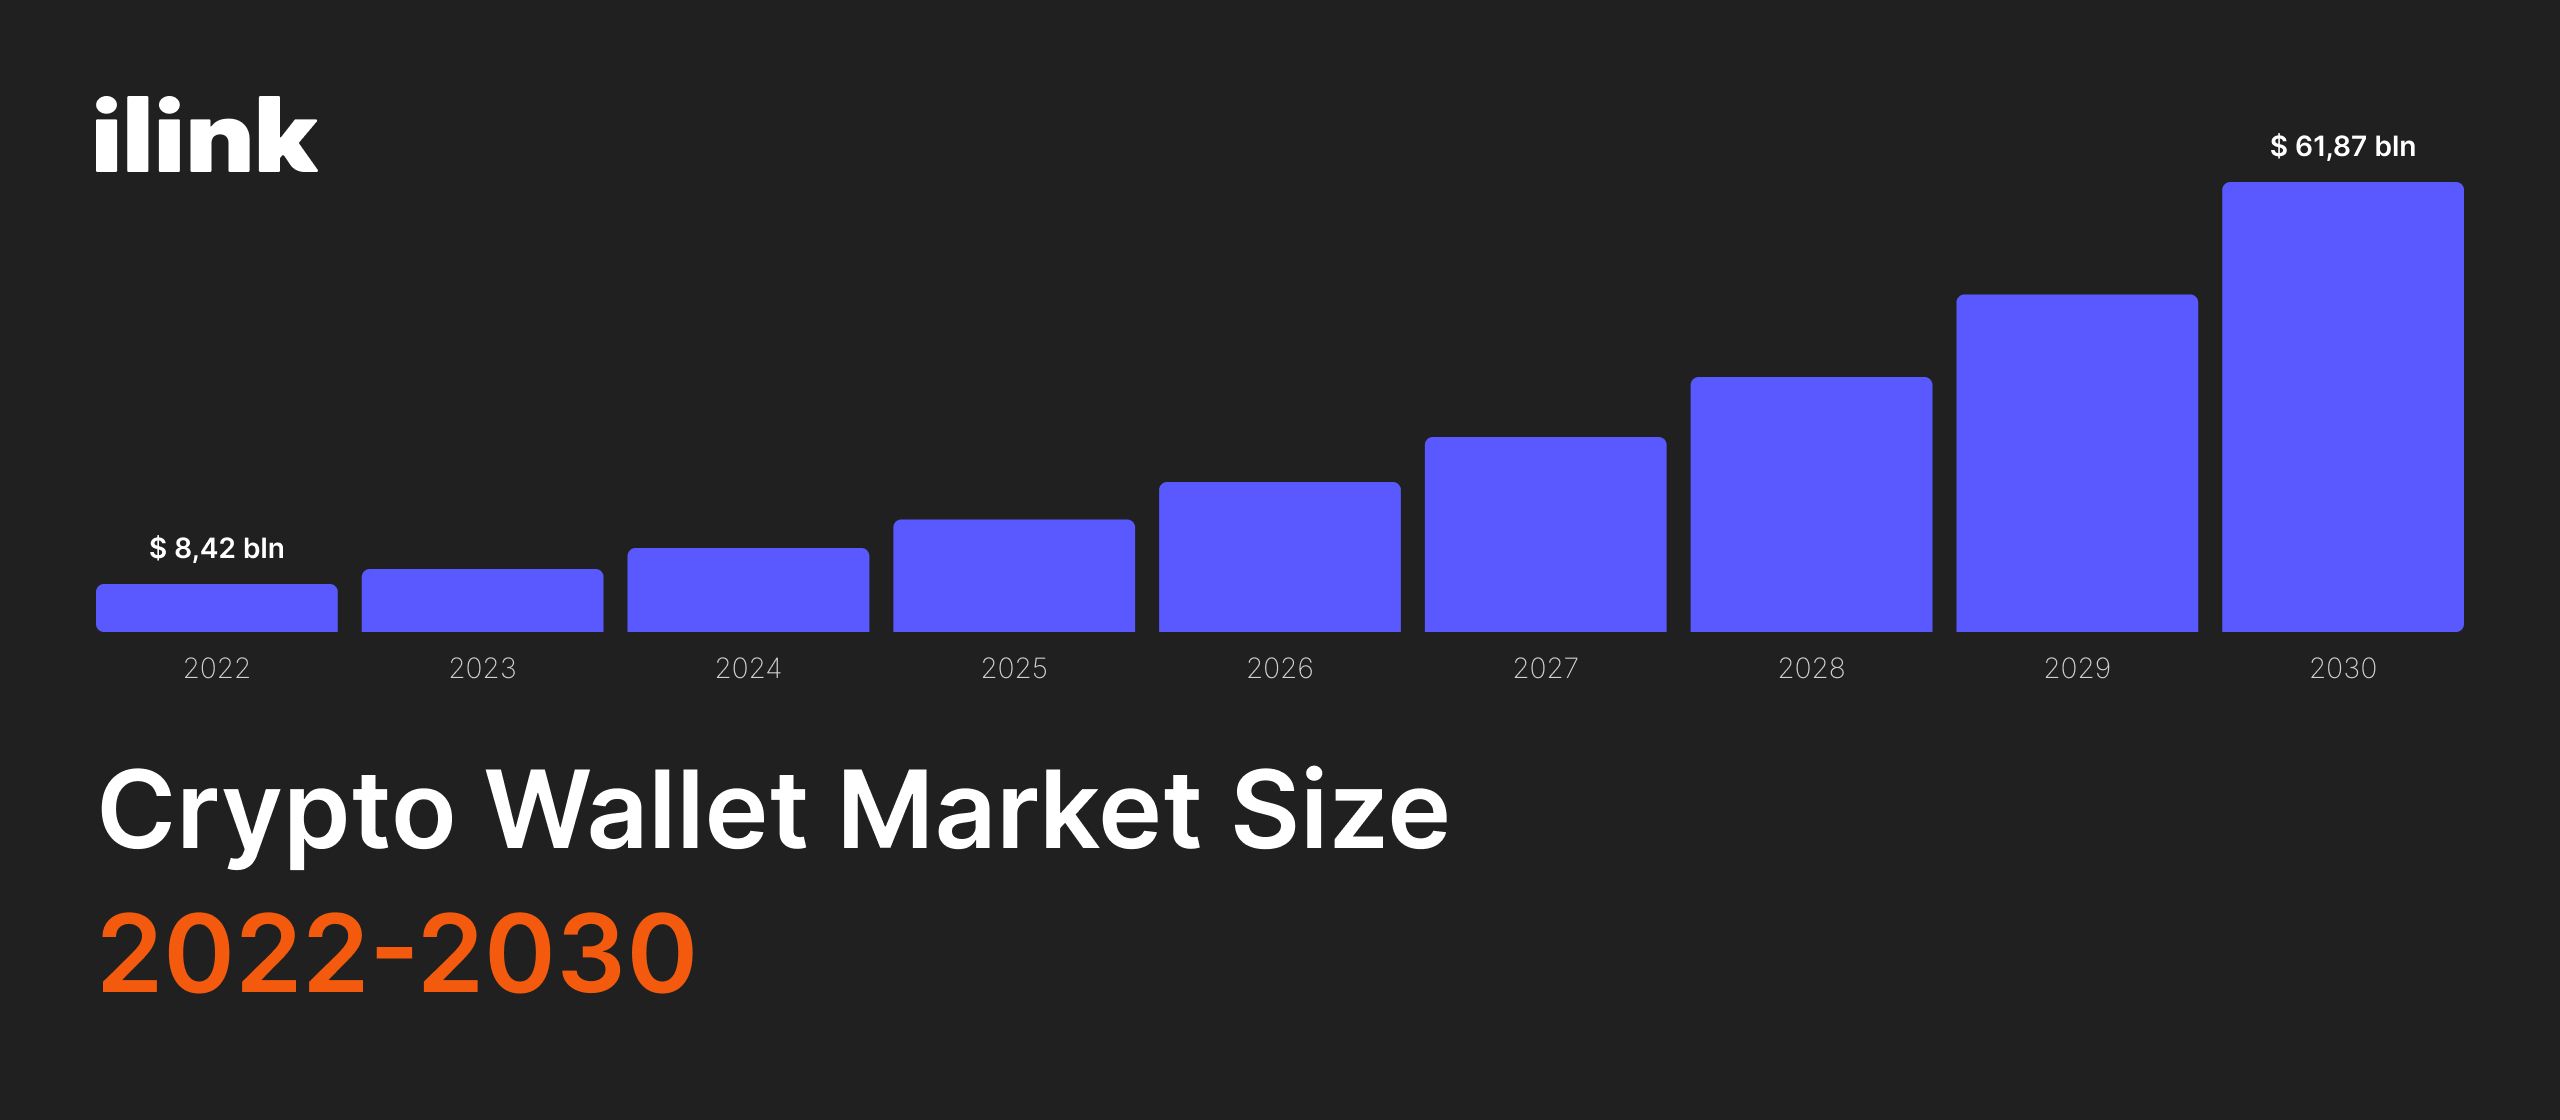 Crypto Wallet Market Size 2022-2030 image ilink